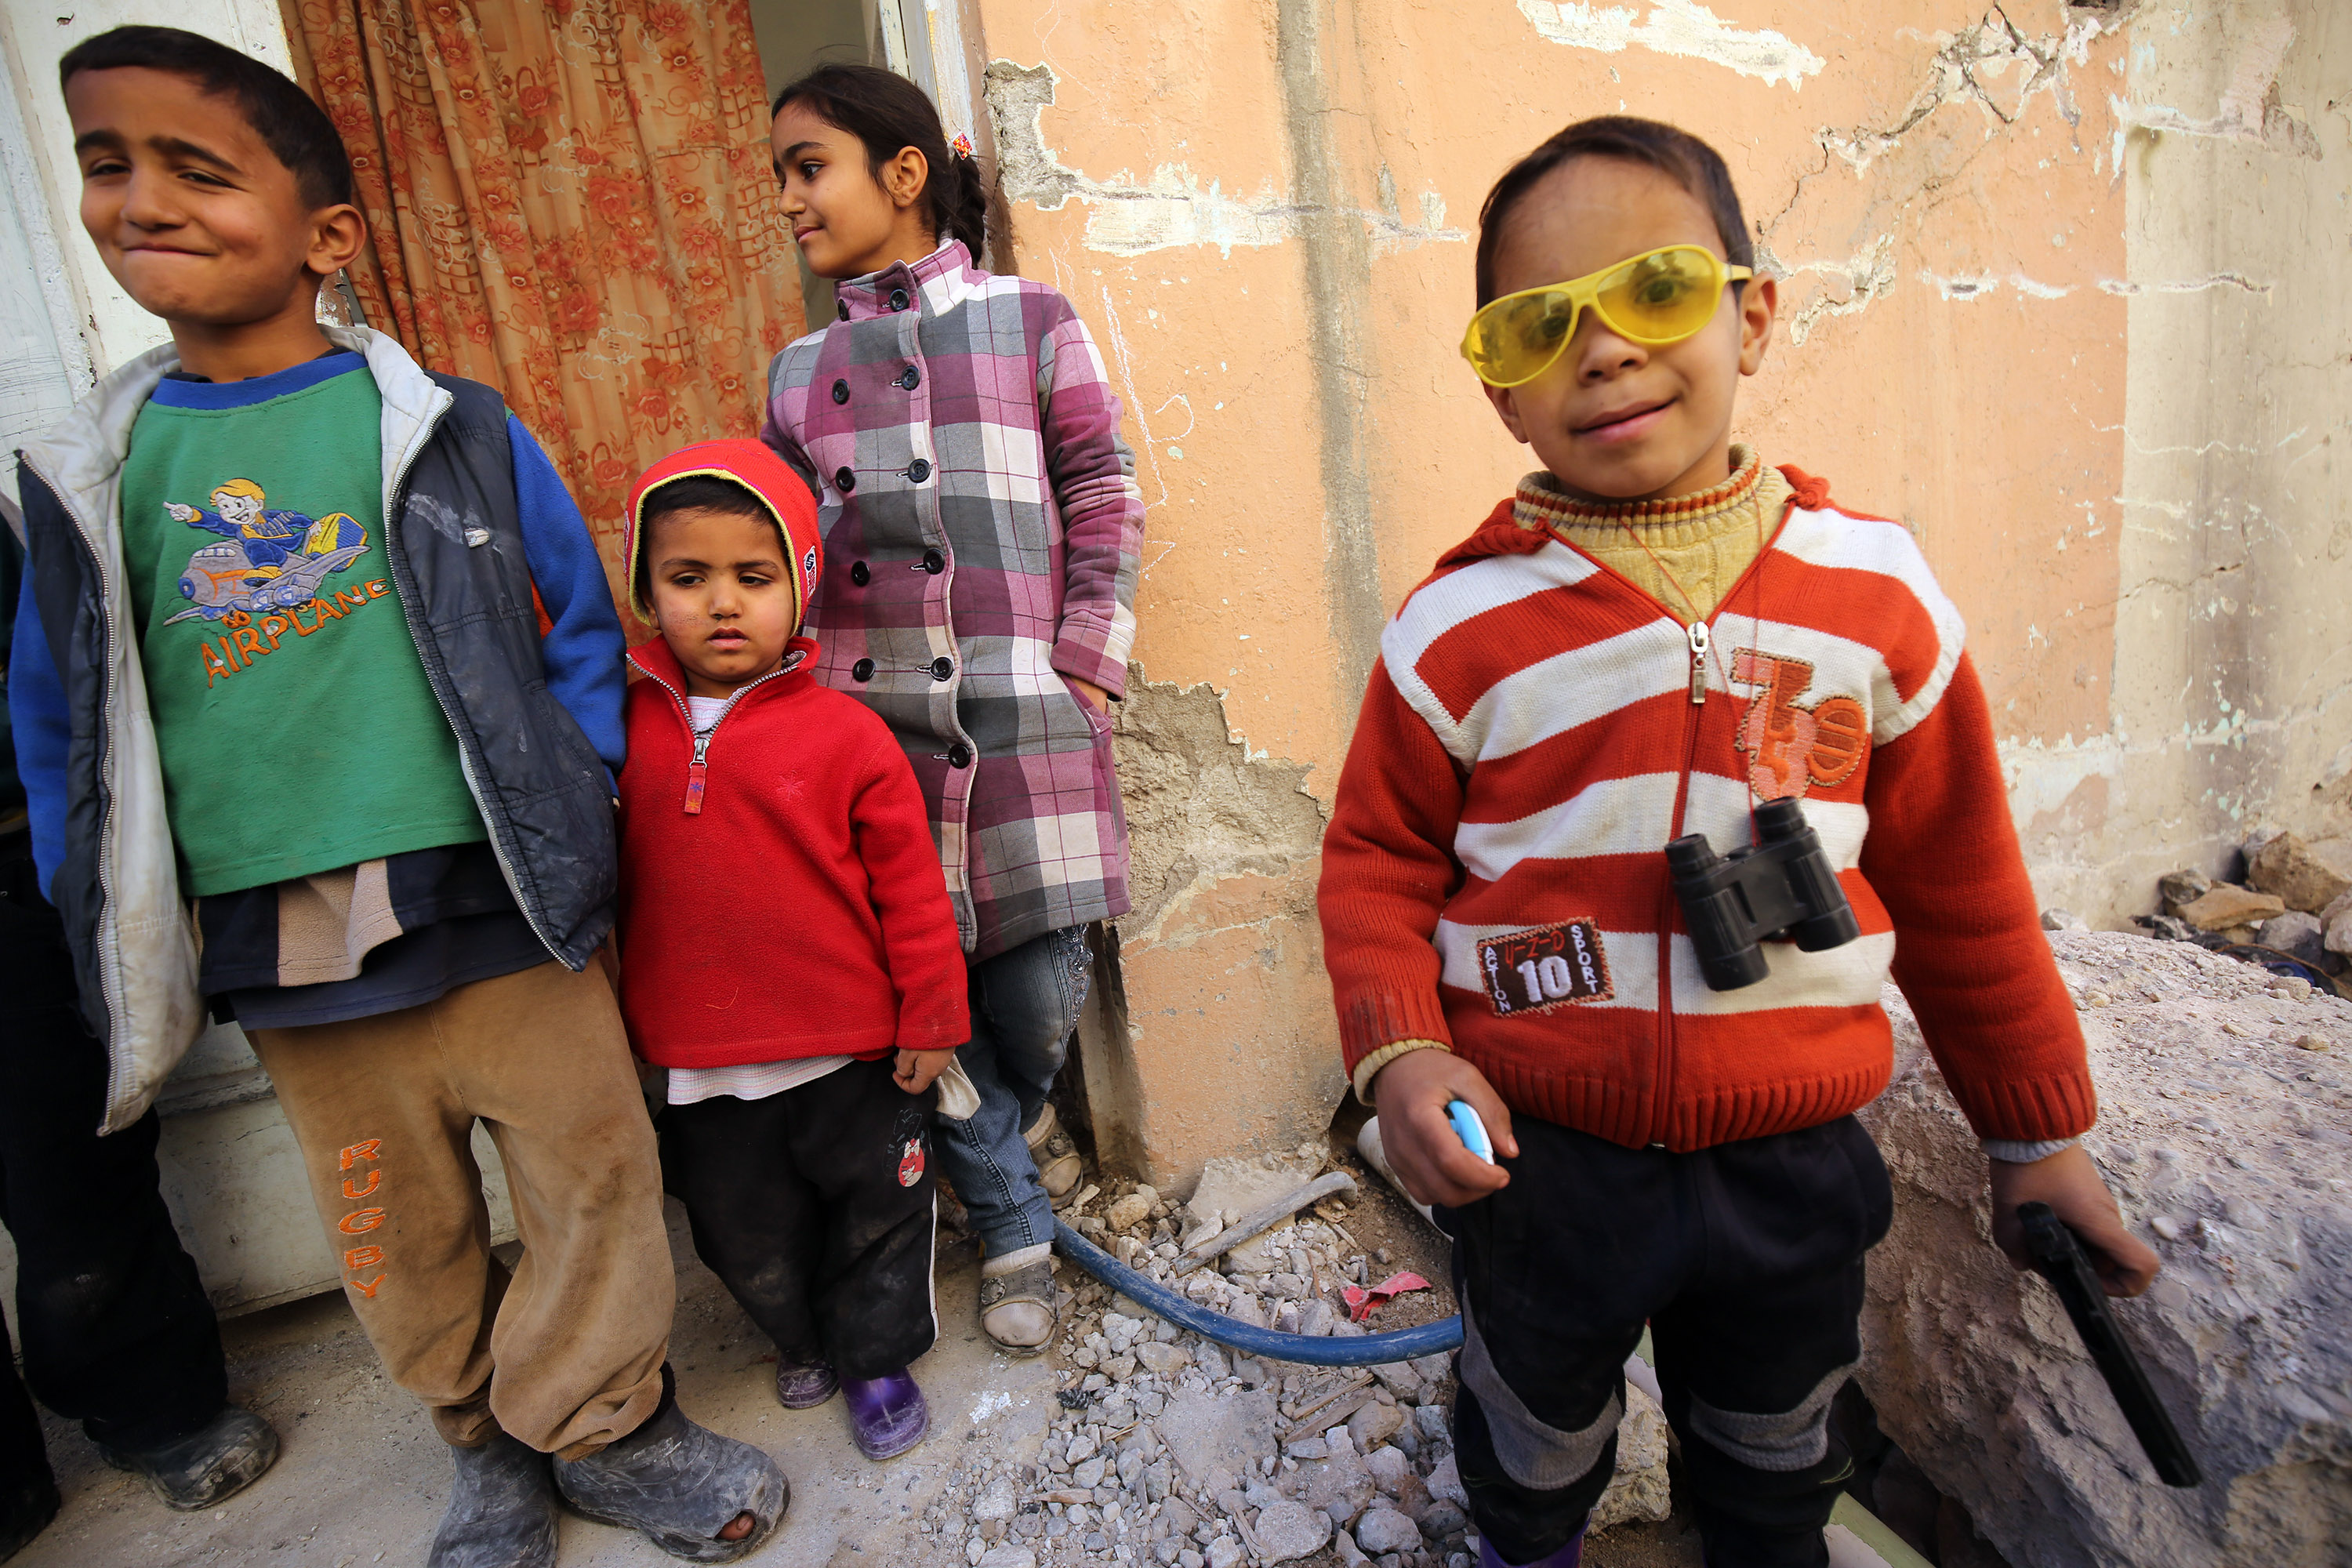 فرحة الأطفال العراقيين بعودتهم لمنازلهم فى مدينة الموصل